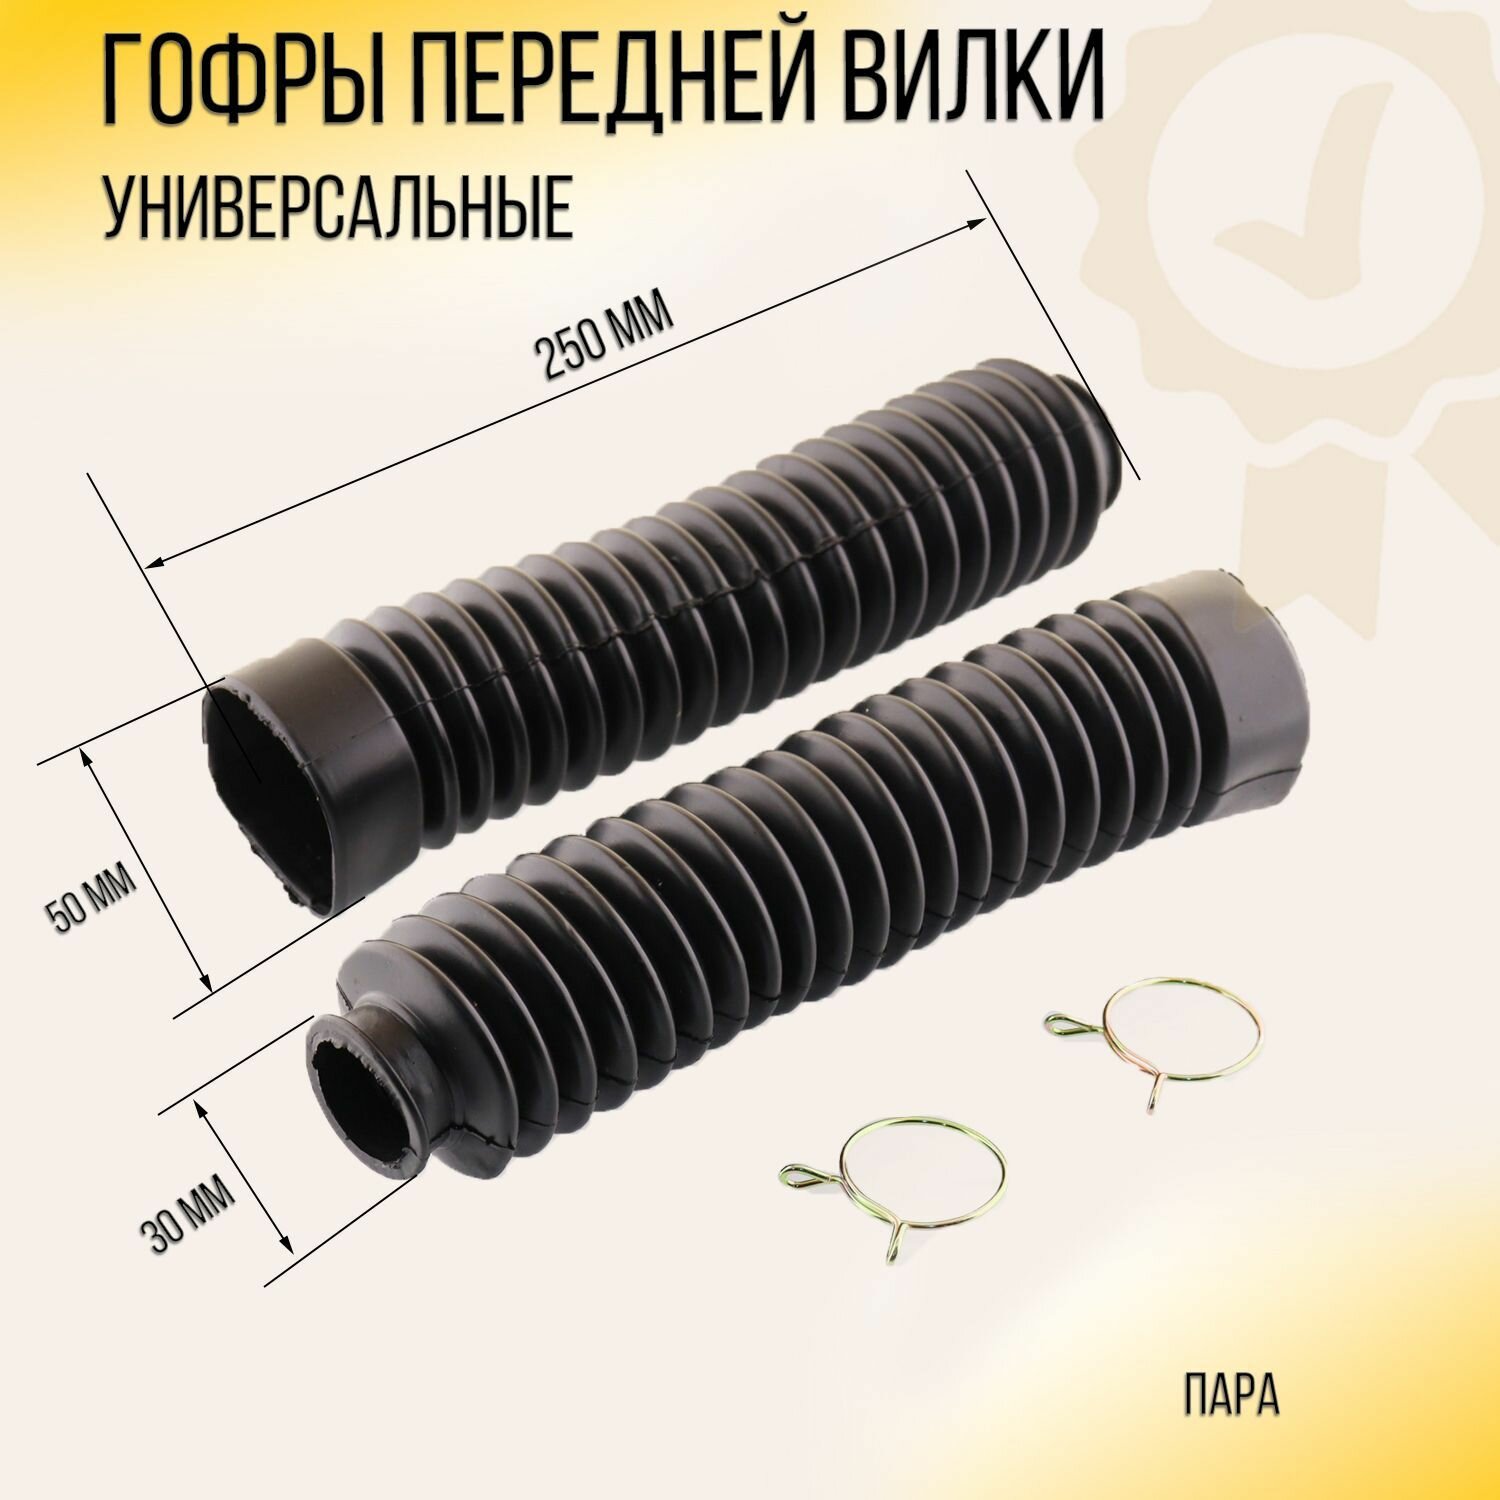 Гофры передней вилки (пара) универсальные L-250mm, d-30mm, D-50mm (черные) "MZK"